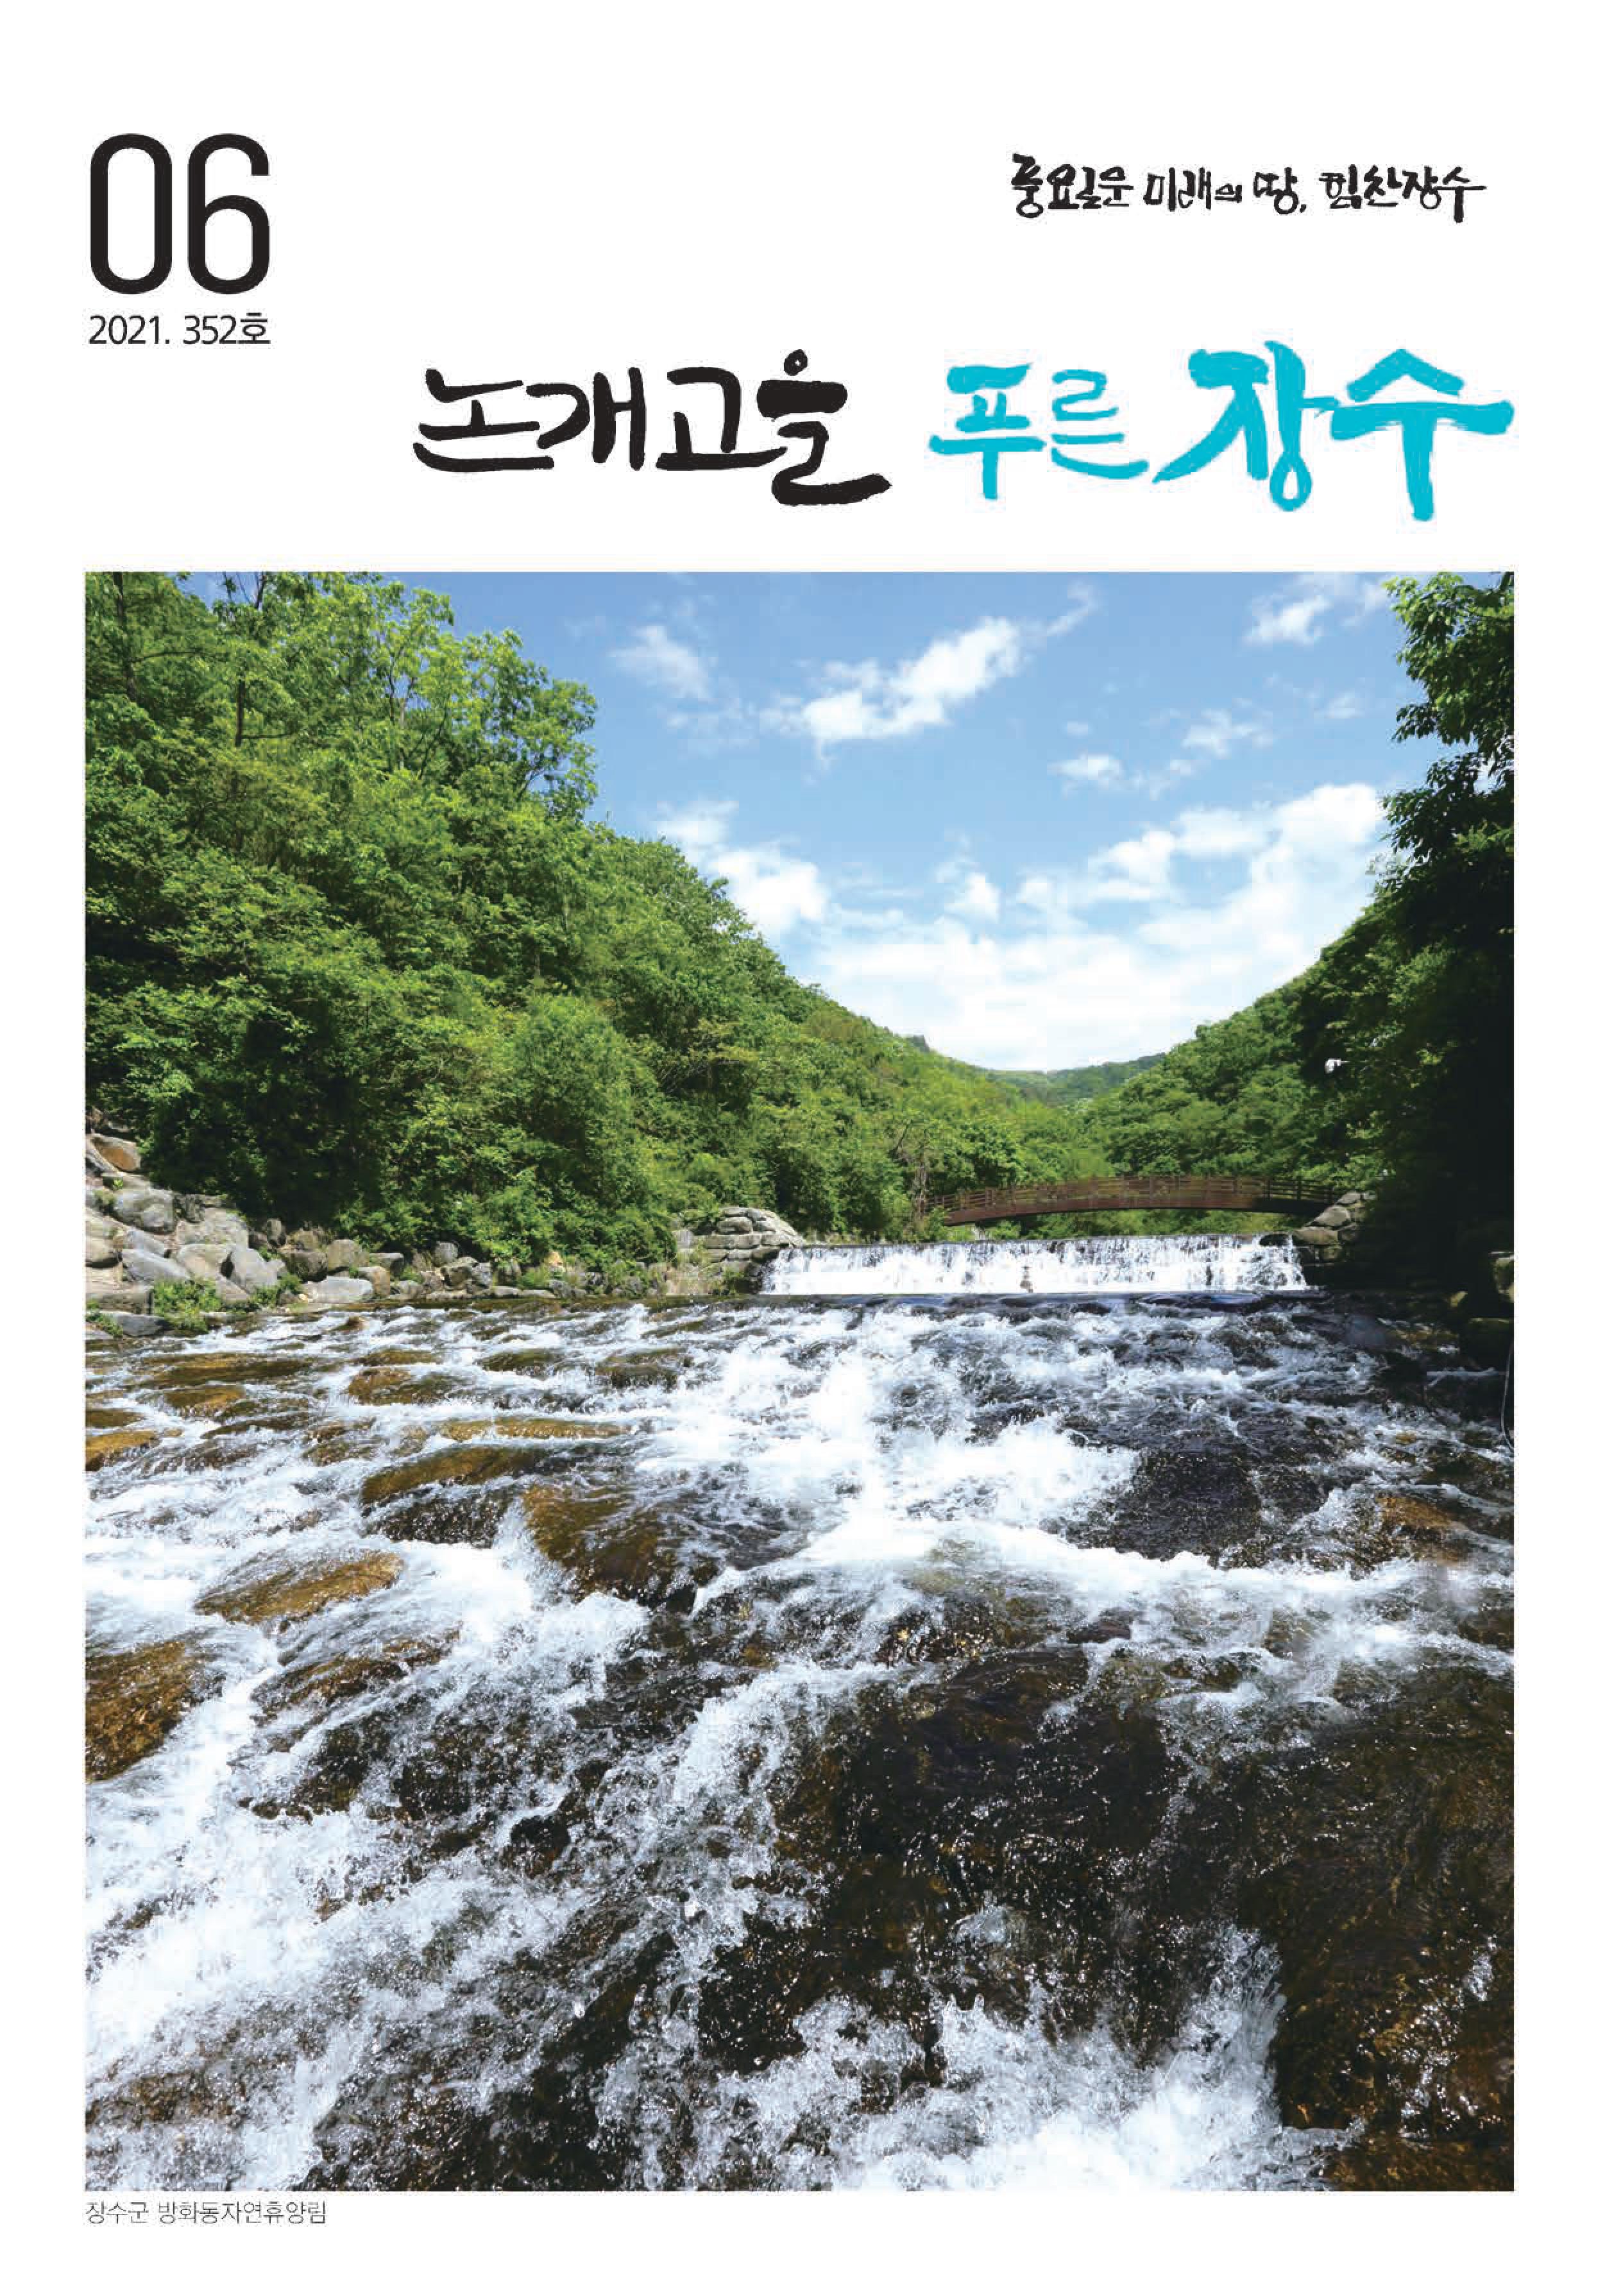 제352호 논개고을 푸른장수 소식지(2021.06) 사진